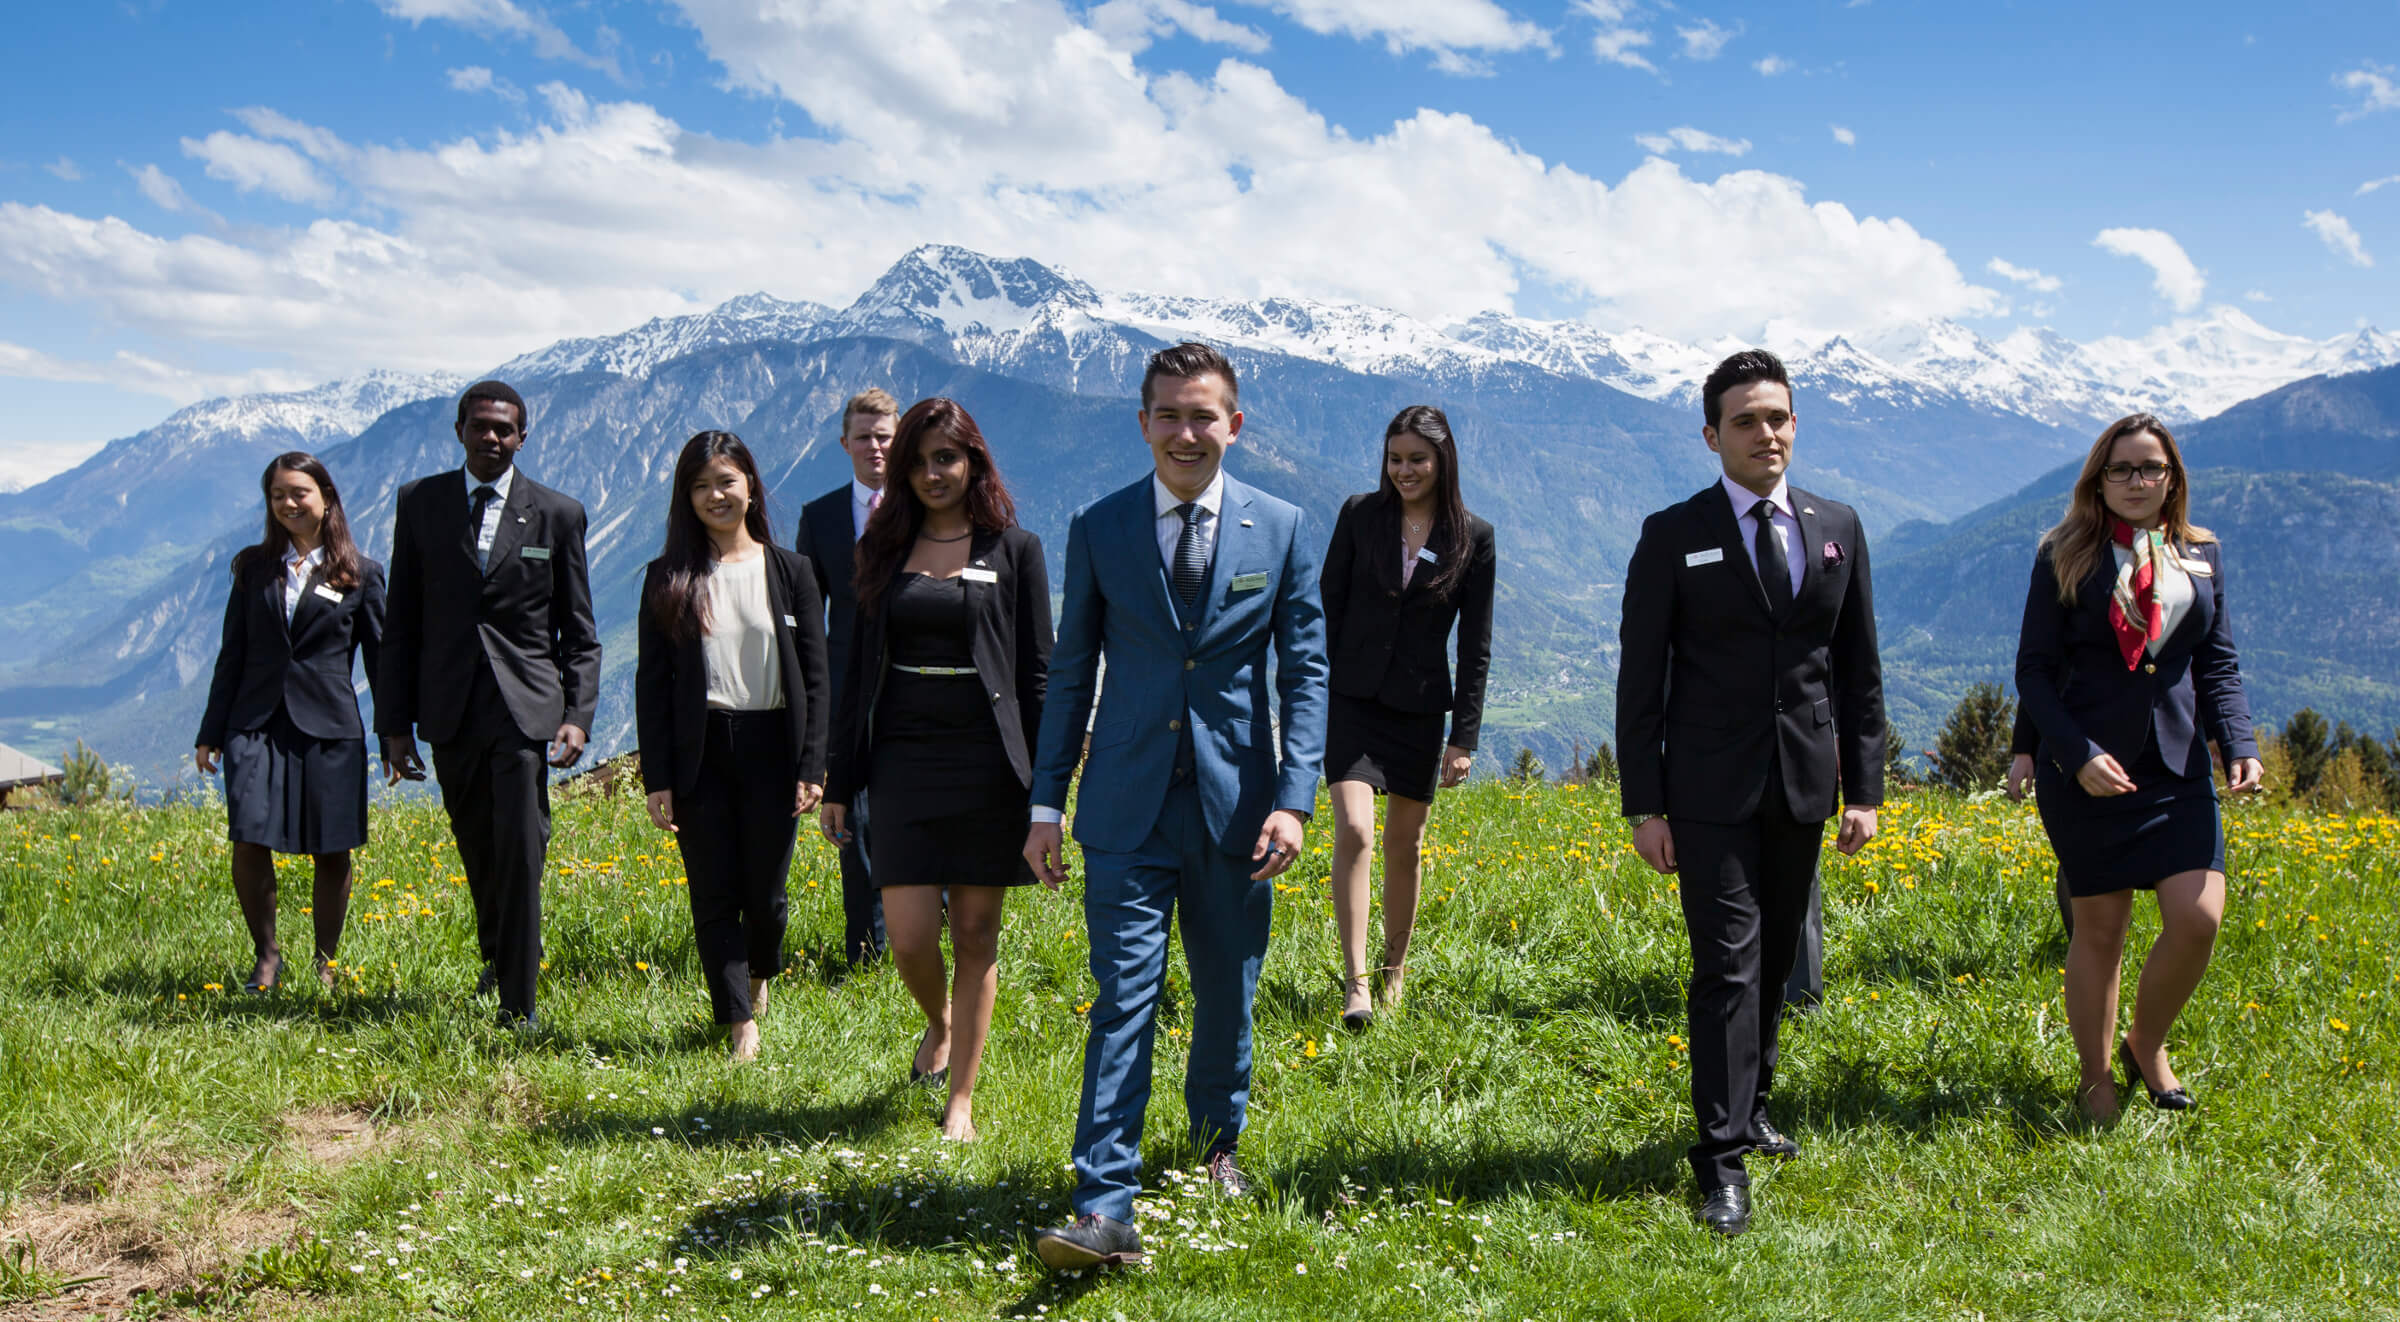 Образование и туризм организации. Les Roches International School of Hotel Management. Швейцария деловой стиль. Деловая встреча на природе. Деловая одежда в туризме.